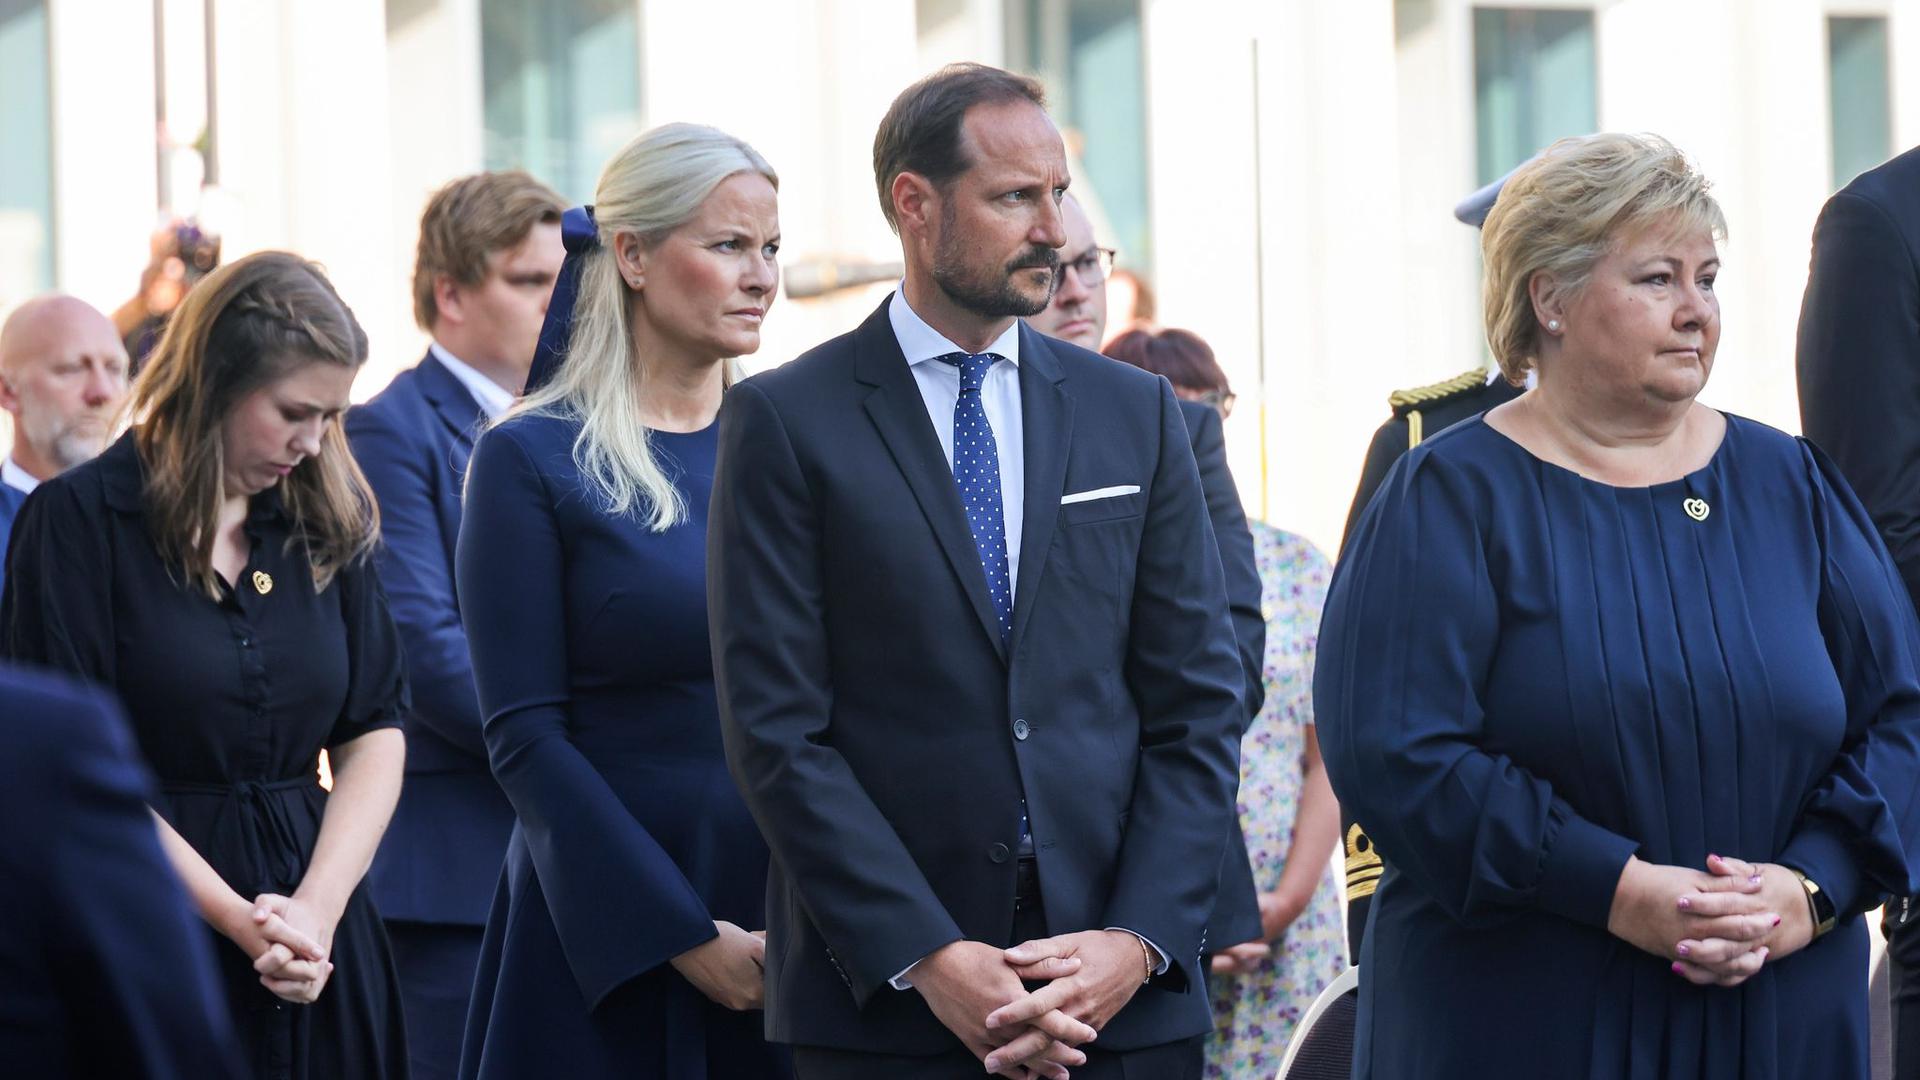 Kronprinzessin Mette-Marit (2.v.l.), Kronprinz Haakon Magnus und die norwegische Ministerpräsidentin Erna Solberg während der Gedenkfeier in Oslo.